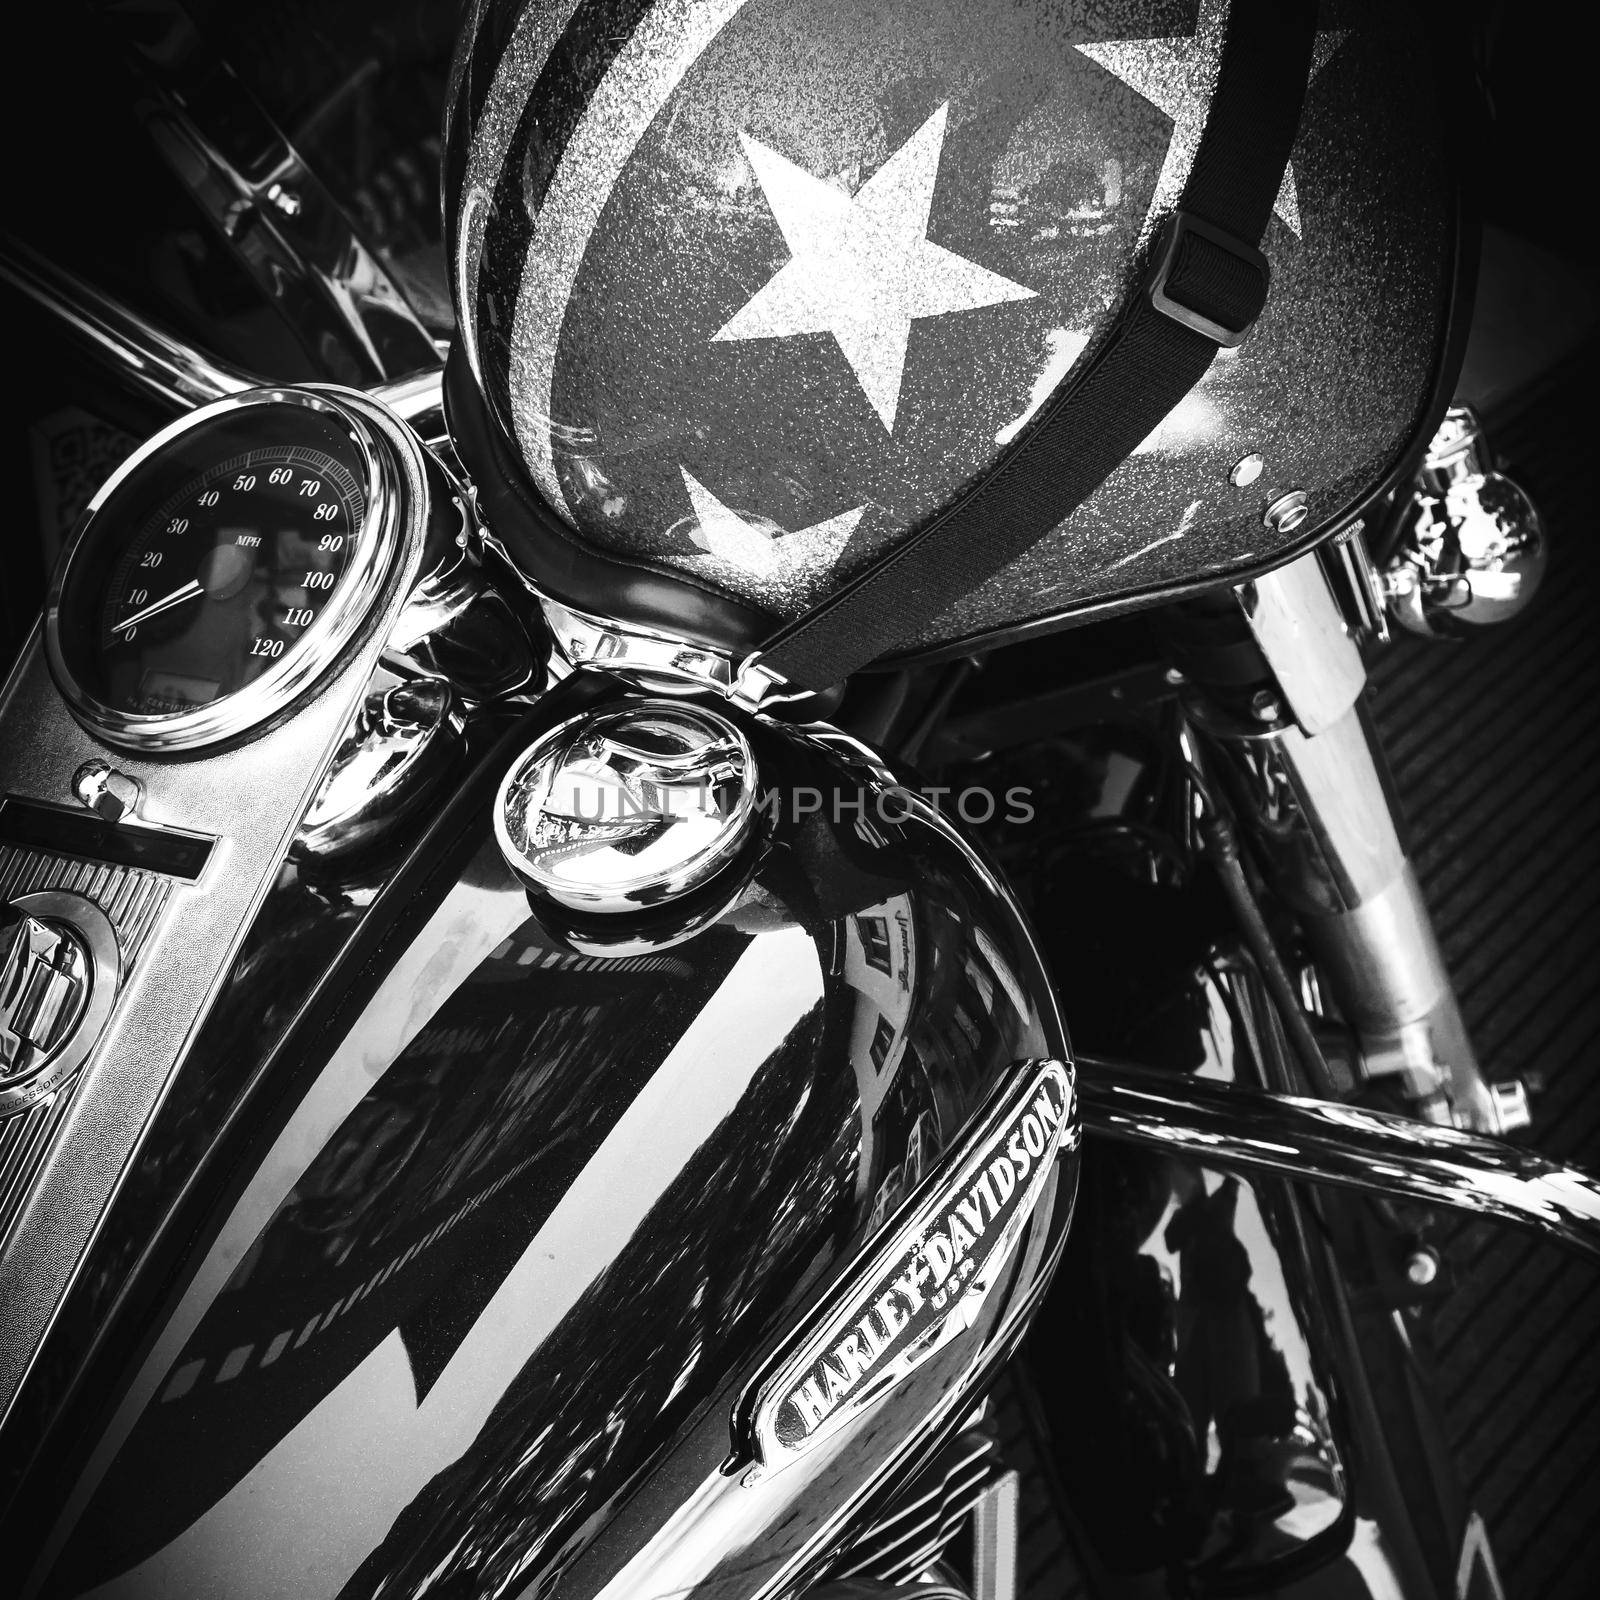 Motorcycle Harley Davidson by germanopoli